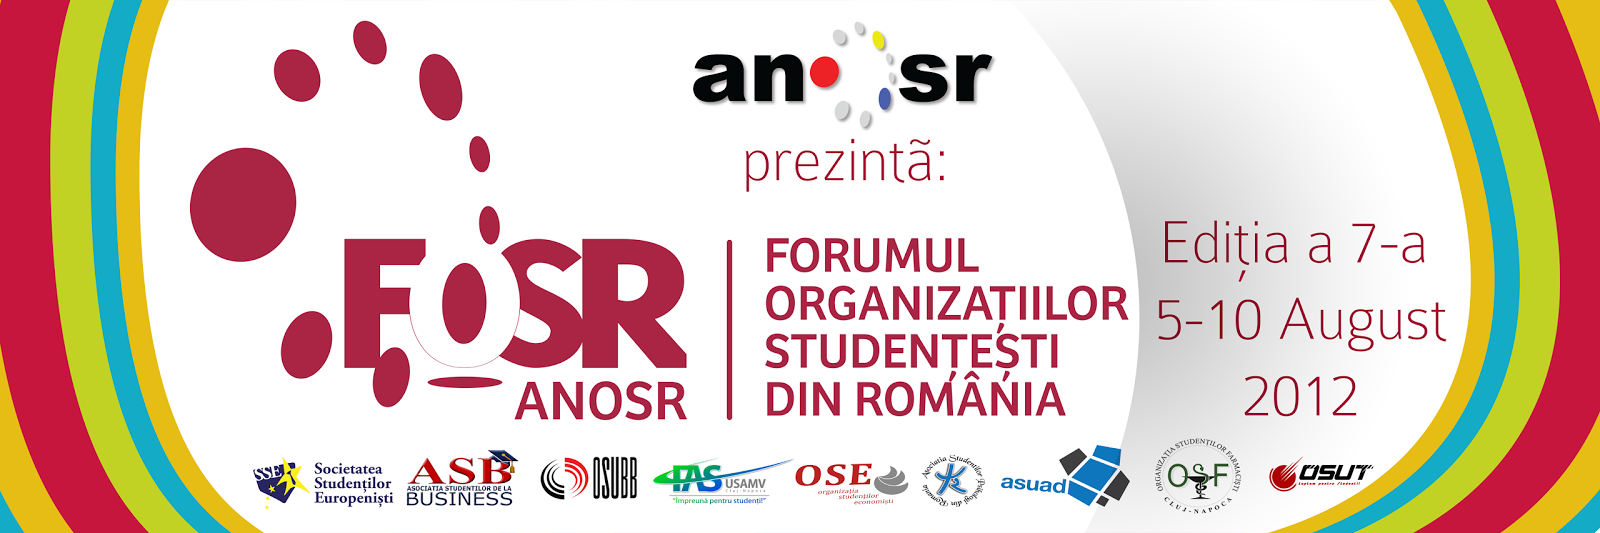 athlete Airlines Facet ASPR Life: Forumul Organizatiilor Studentesti din Romania, 5-10 august  2012, Cluj-Napoca